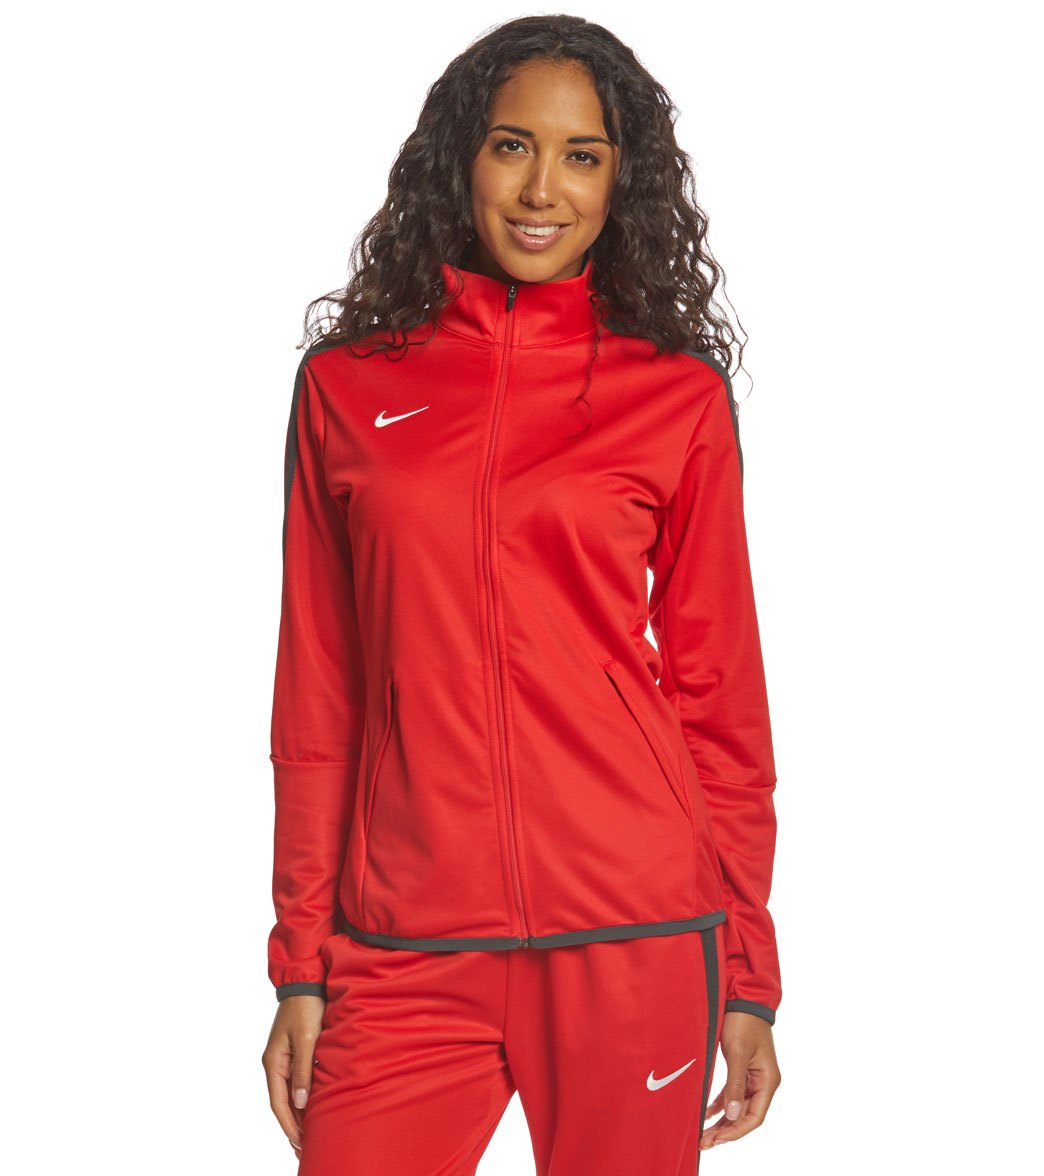 Nike Women S Training Jacket